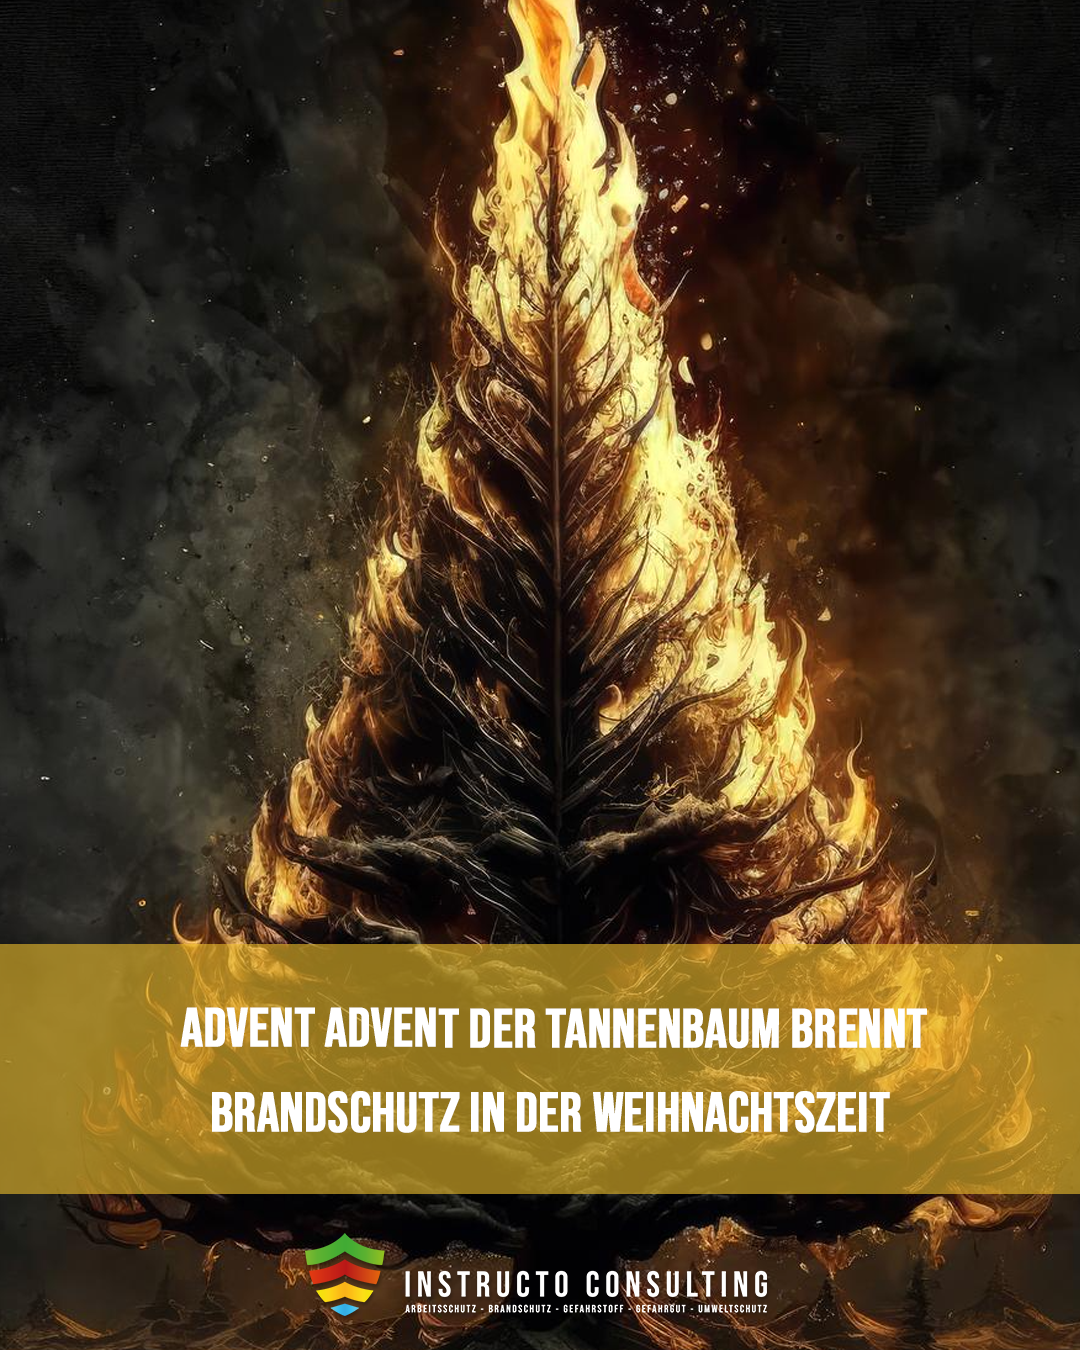 Advent, Advent der Tannenbaum brennt…